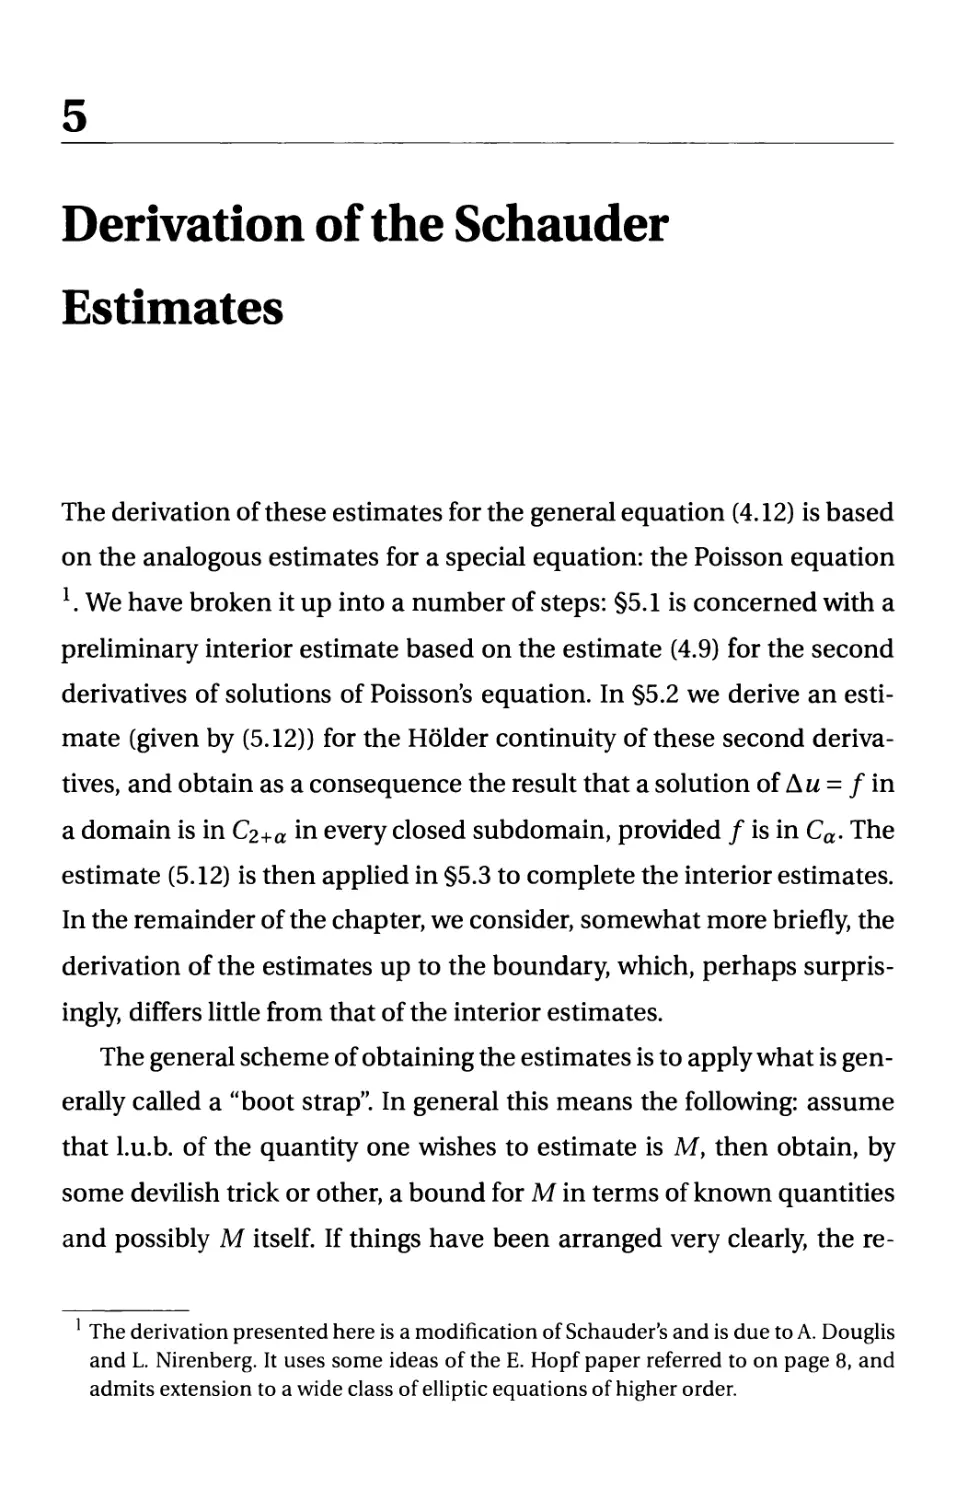 5. Derivation of the Schauder Estimates